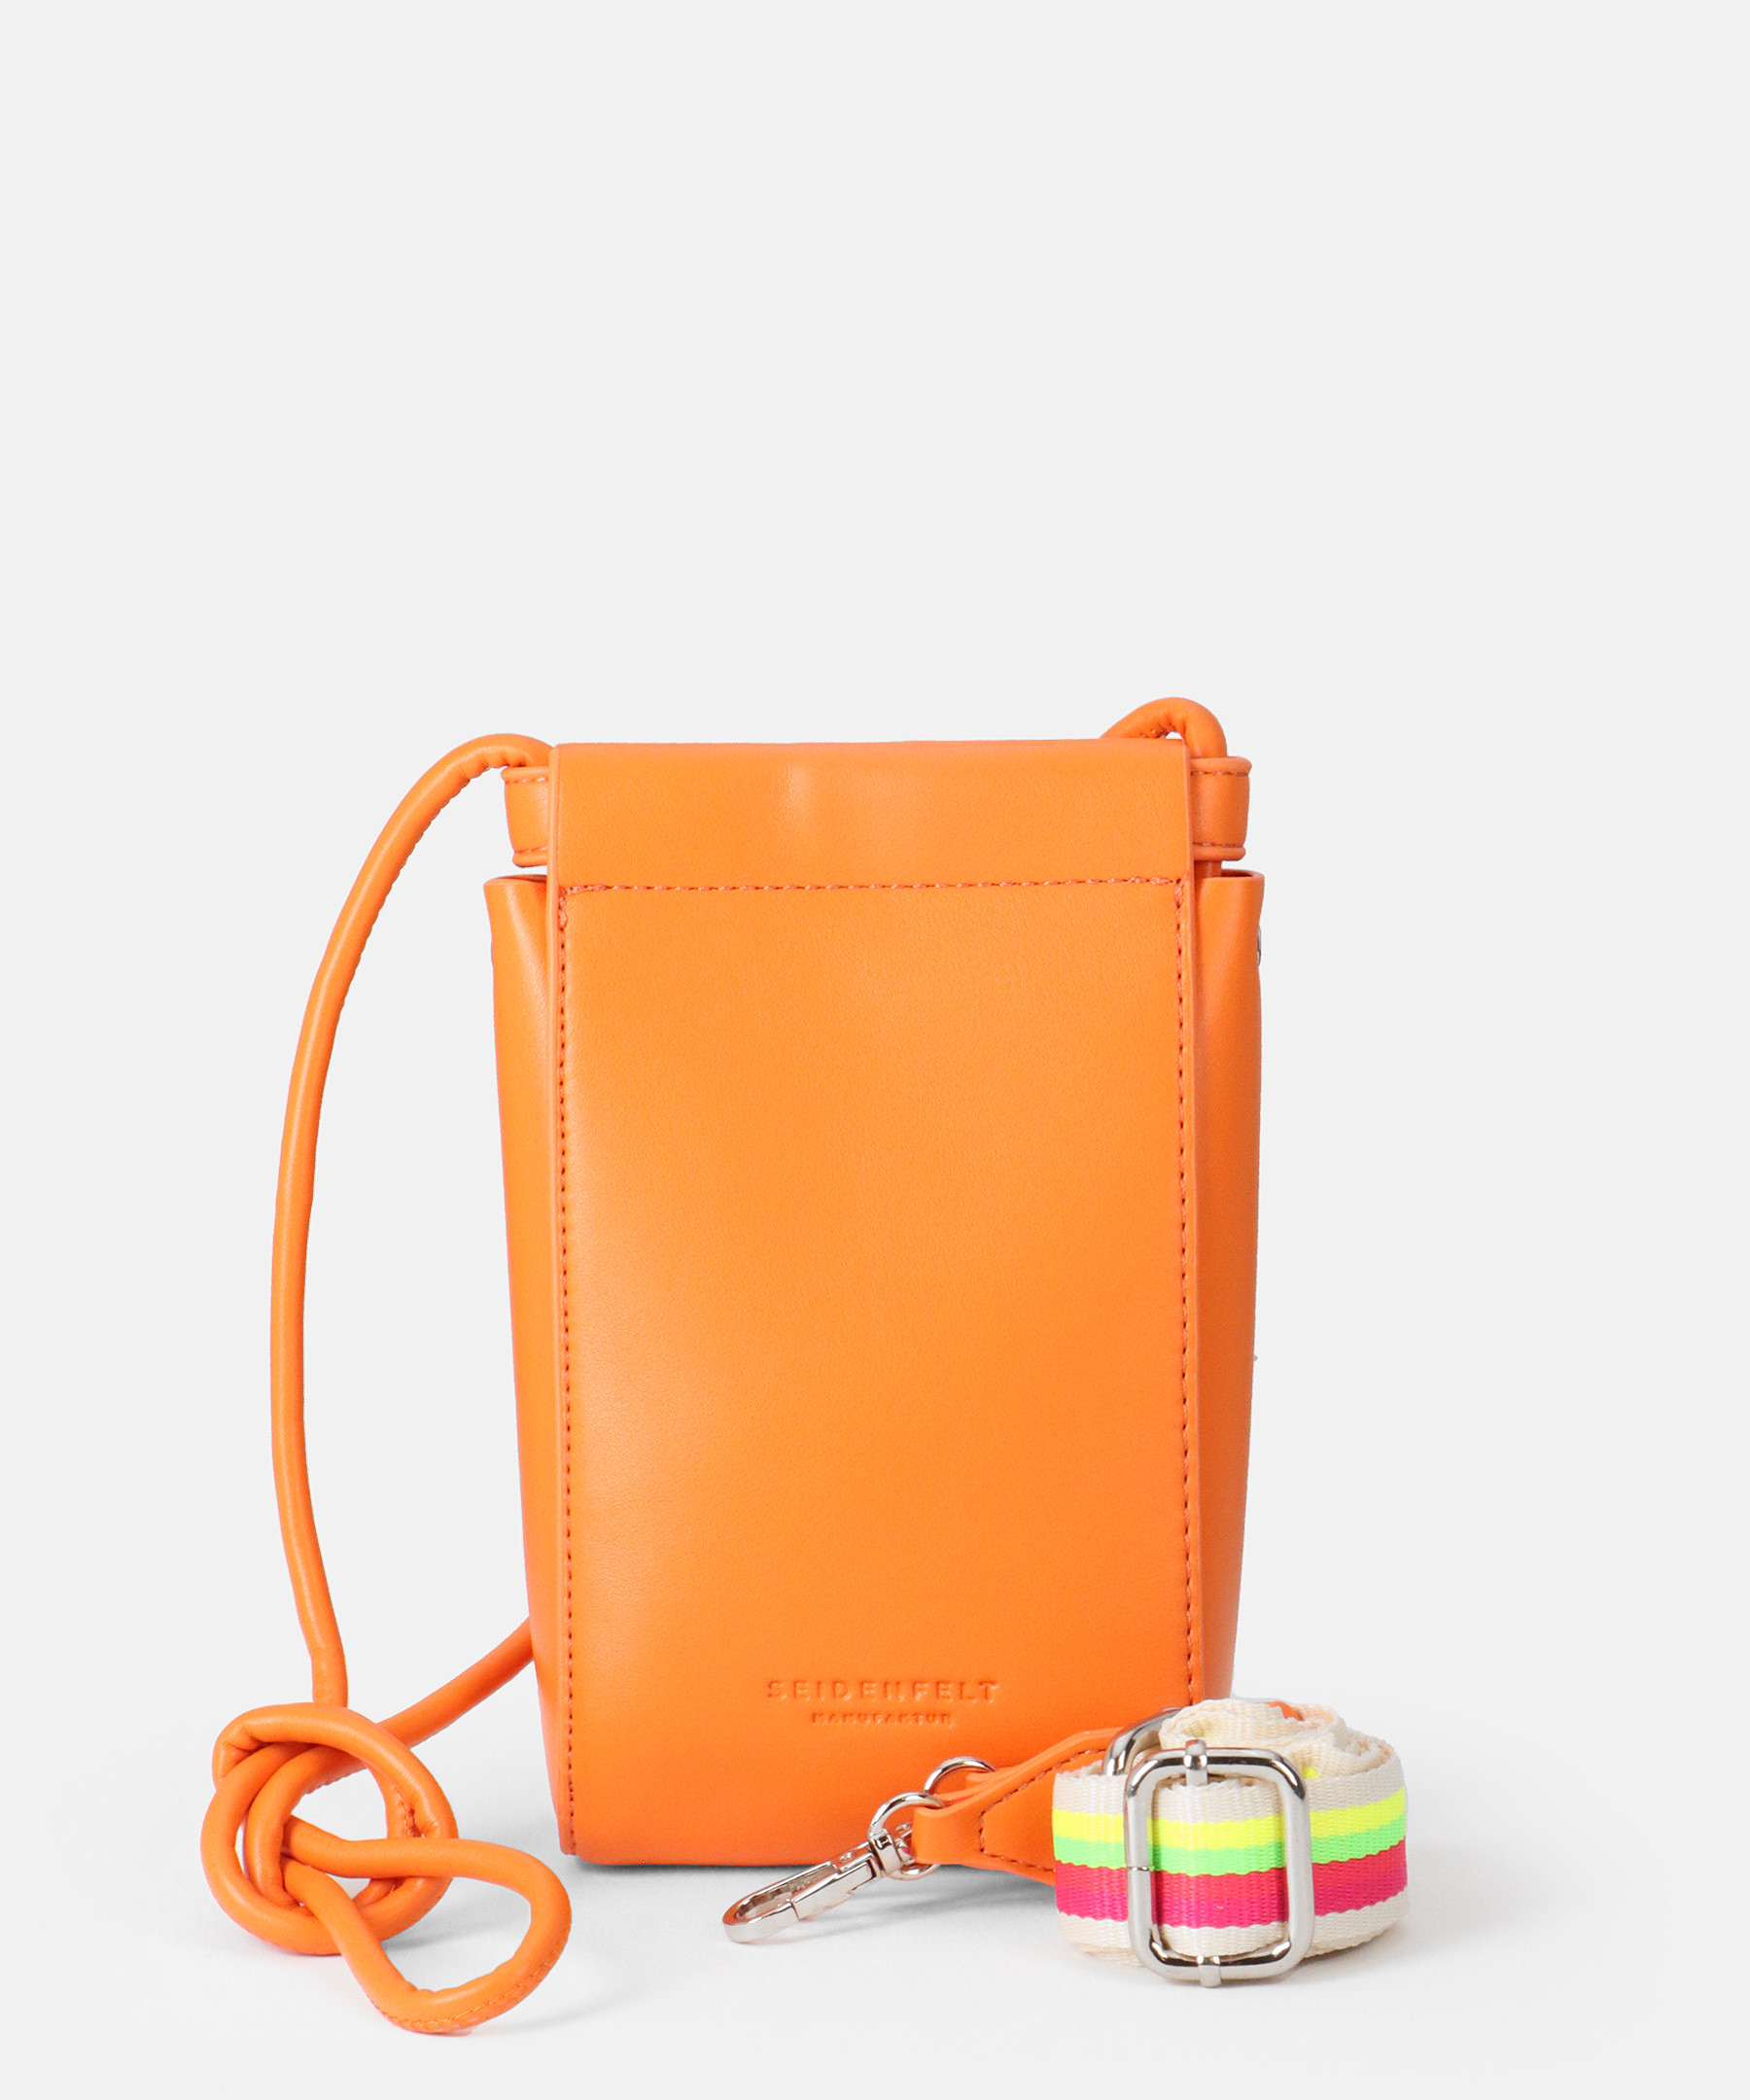 Seidenfelt Tasche Lyngby Cellphone Bag Orange